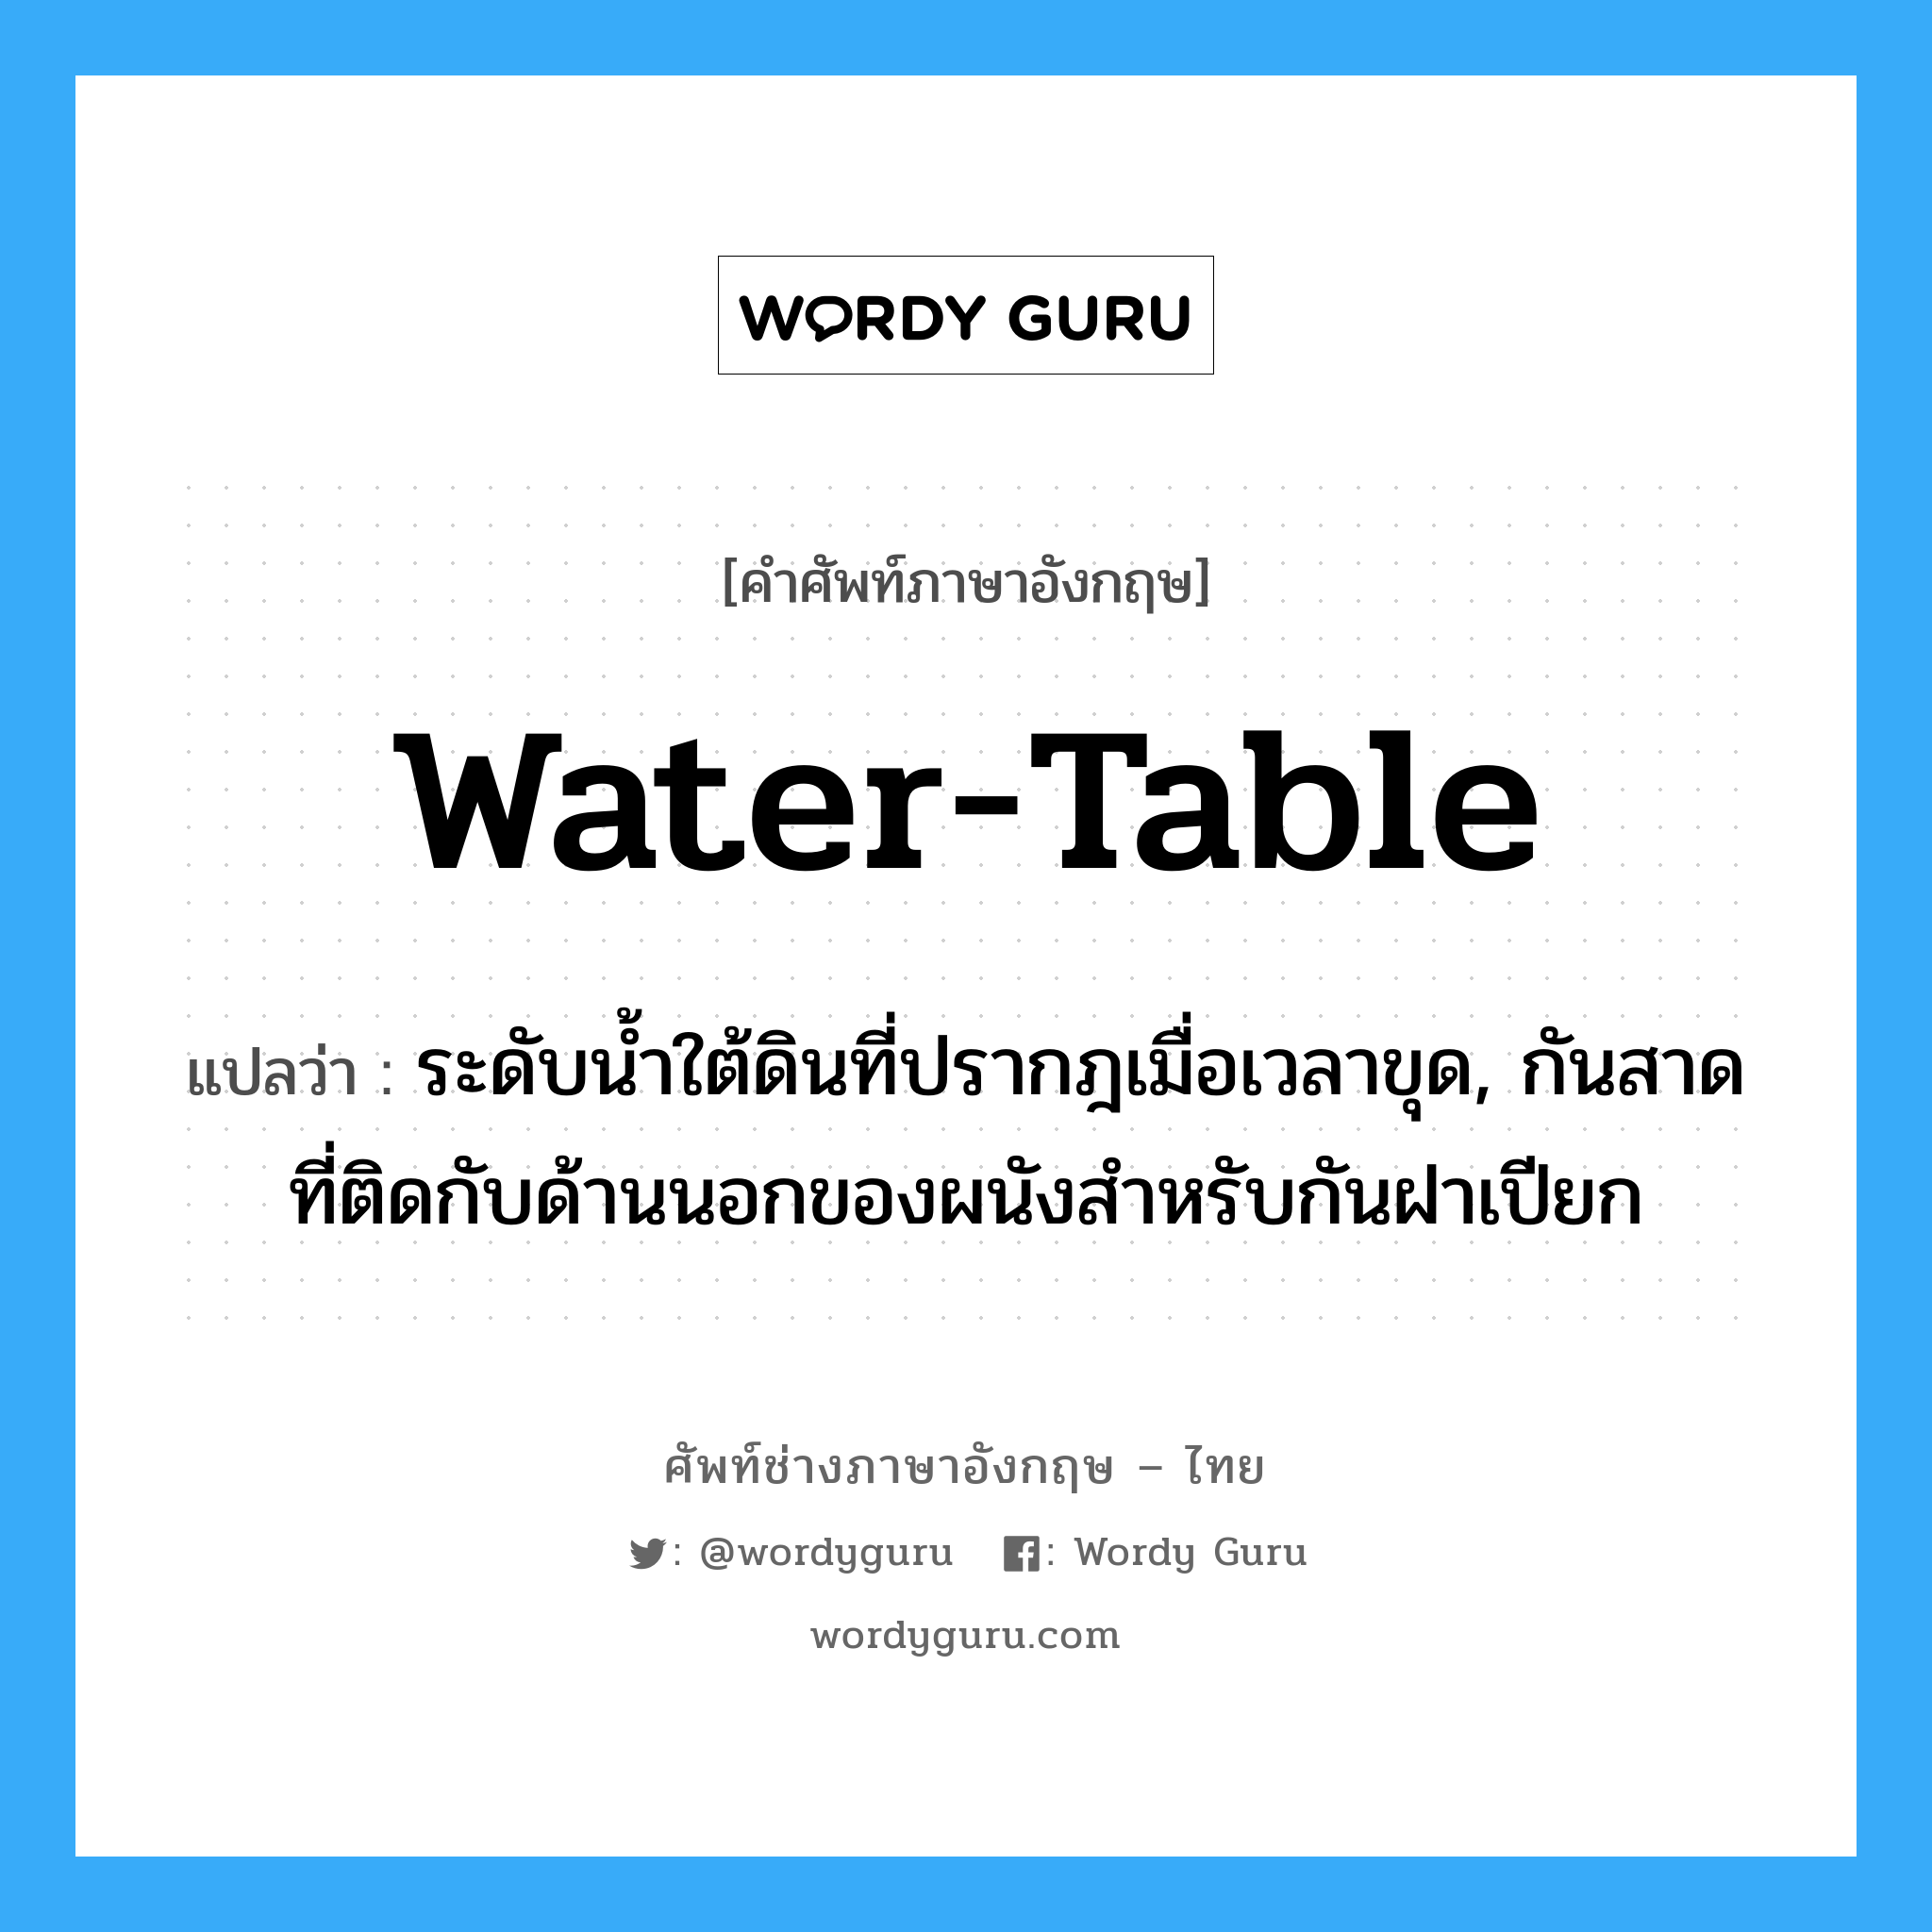 water-table แปลว่า?, คำศัพท์ช่างภาษาอังกฤษ - ไทย water-table คำศัพท์ภาษาอังกฤษ water-table แปลว่า ระดับน้ำใต้ดินที่ปรากฎเมื่อเวลาขุด, กันสาดที่ติดกับด้านนอกของผนังสำหรับกันฝาเปียก